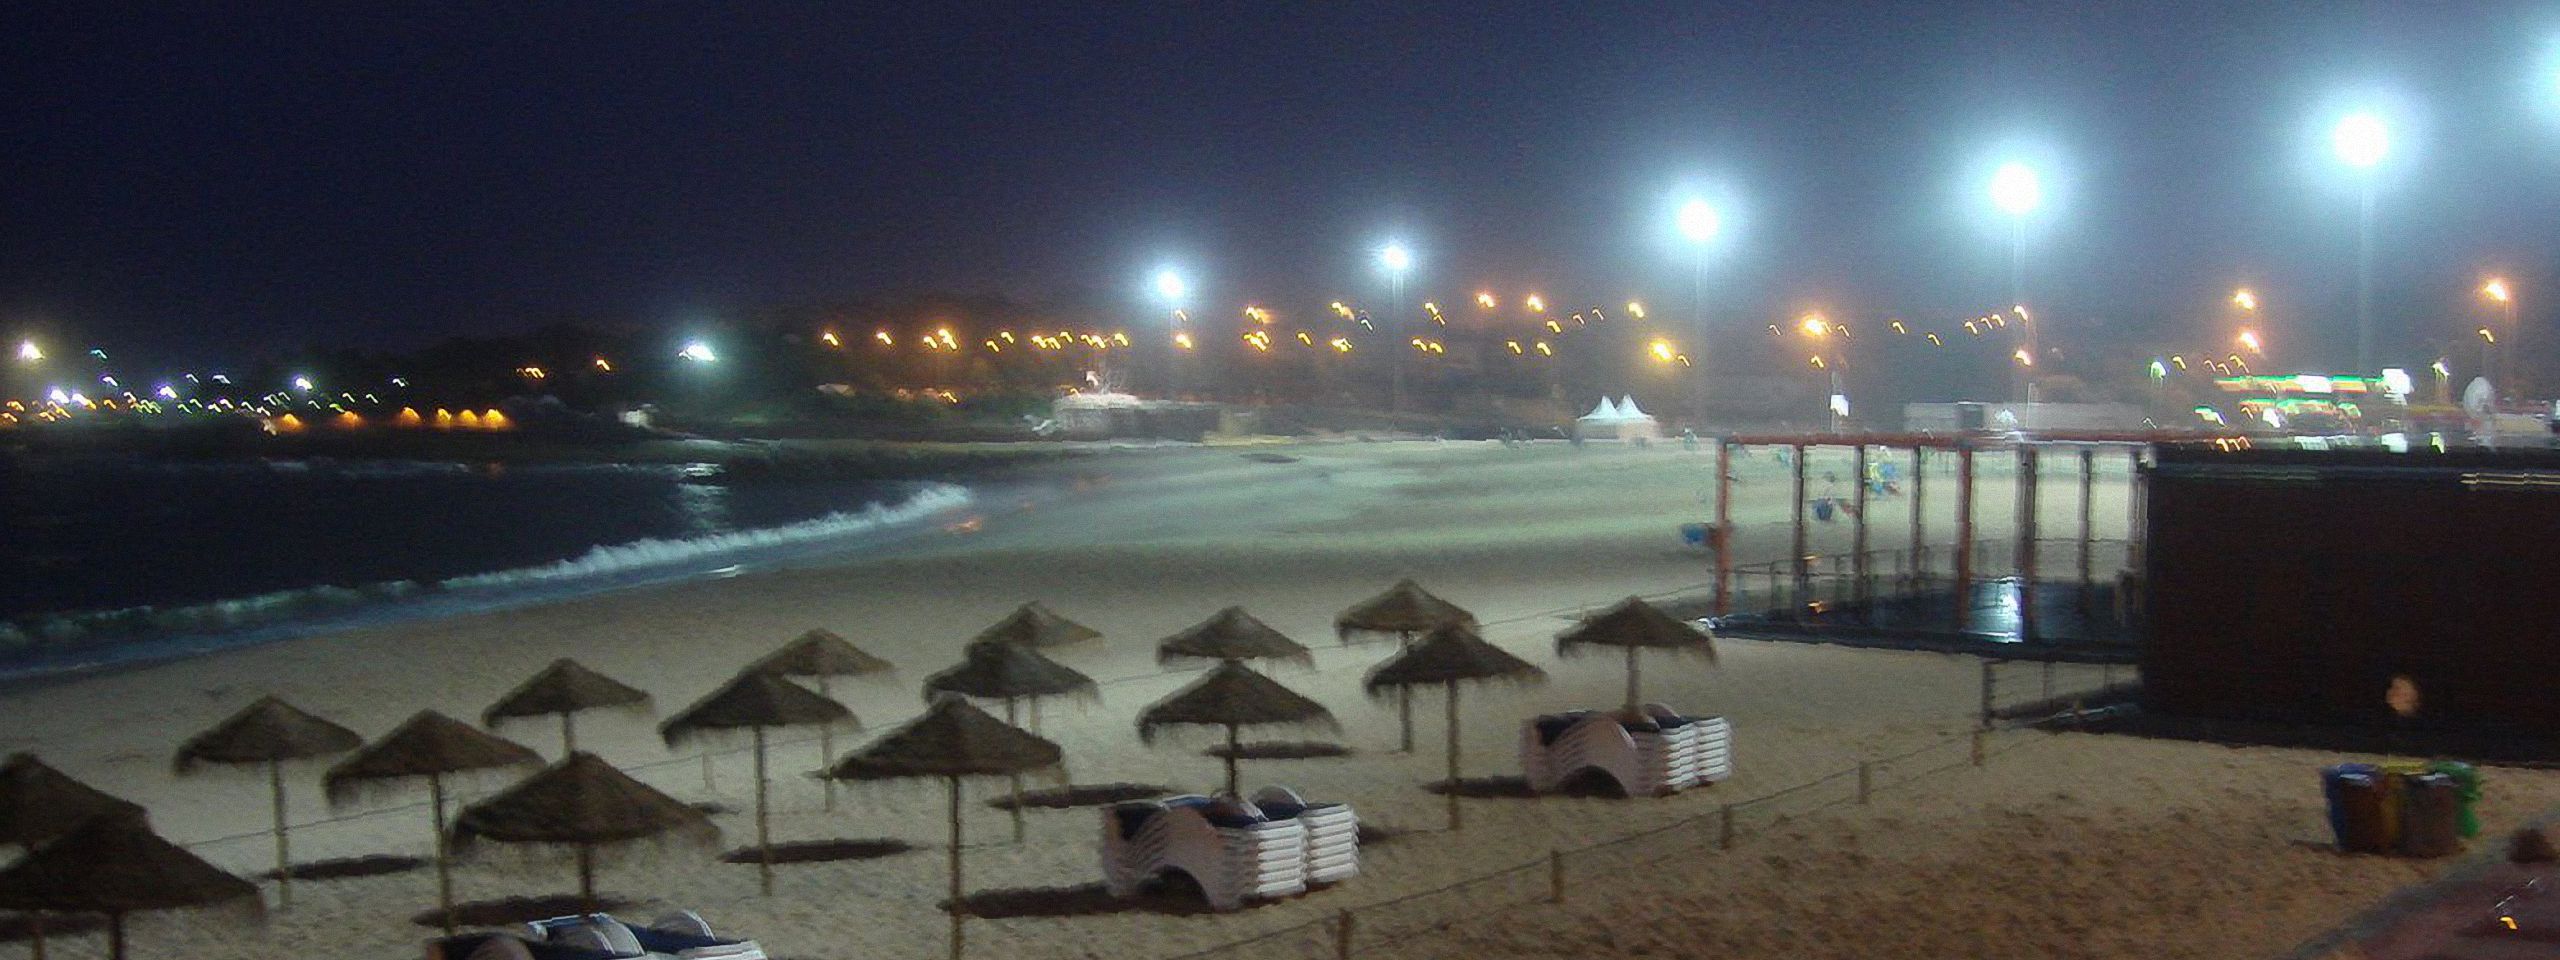 Santo Amaro Beach at night in Oeiras, Portugal